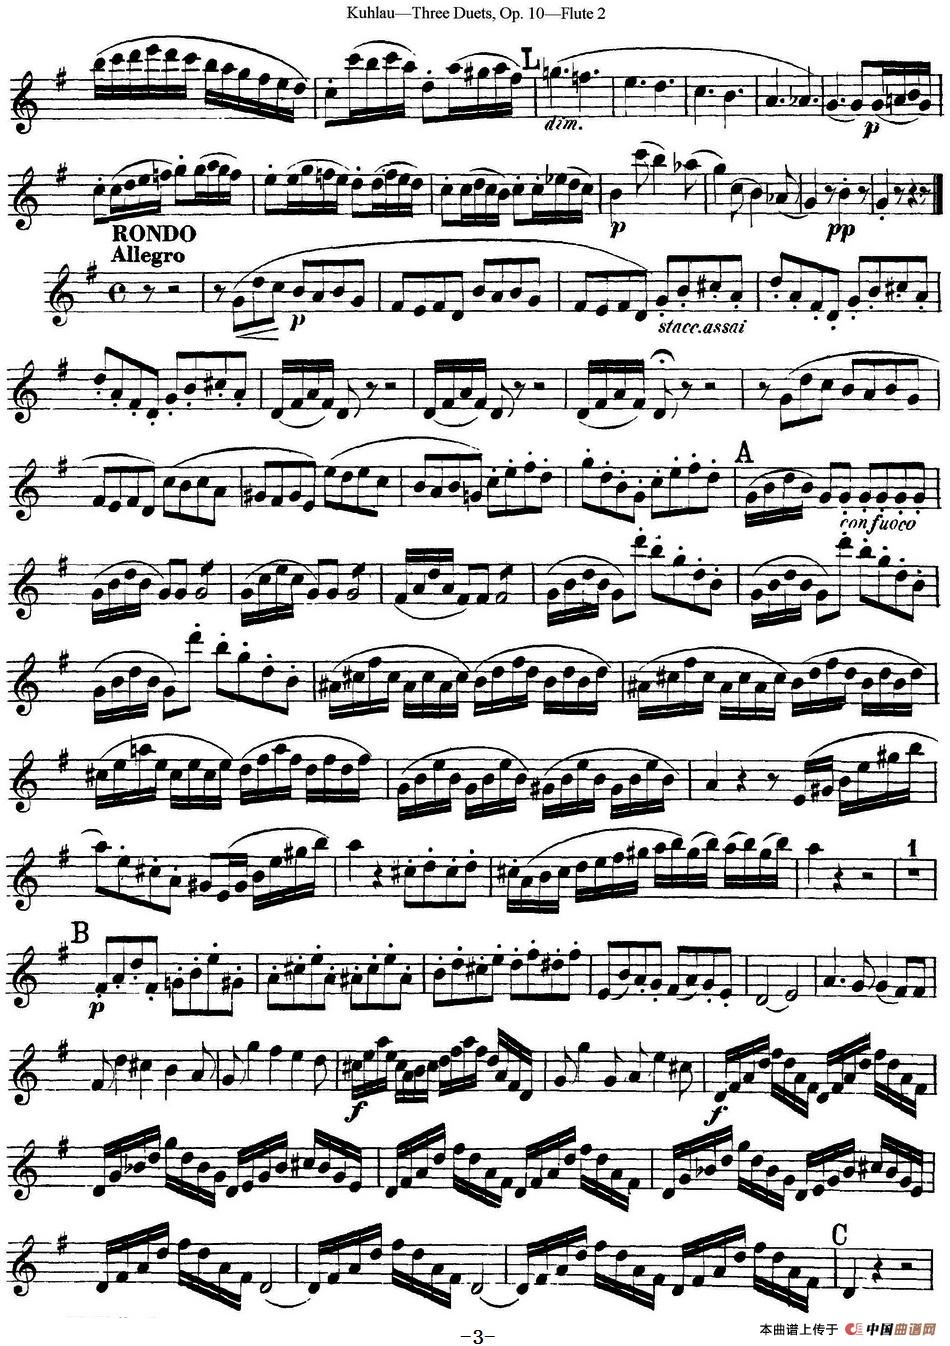 库劳长笛二重奏练习曲Op.10——Flute 2（No.3）